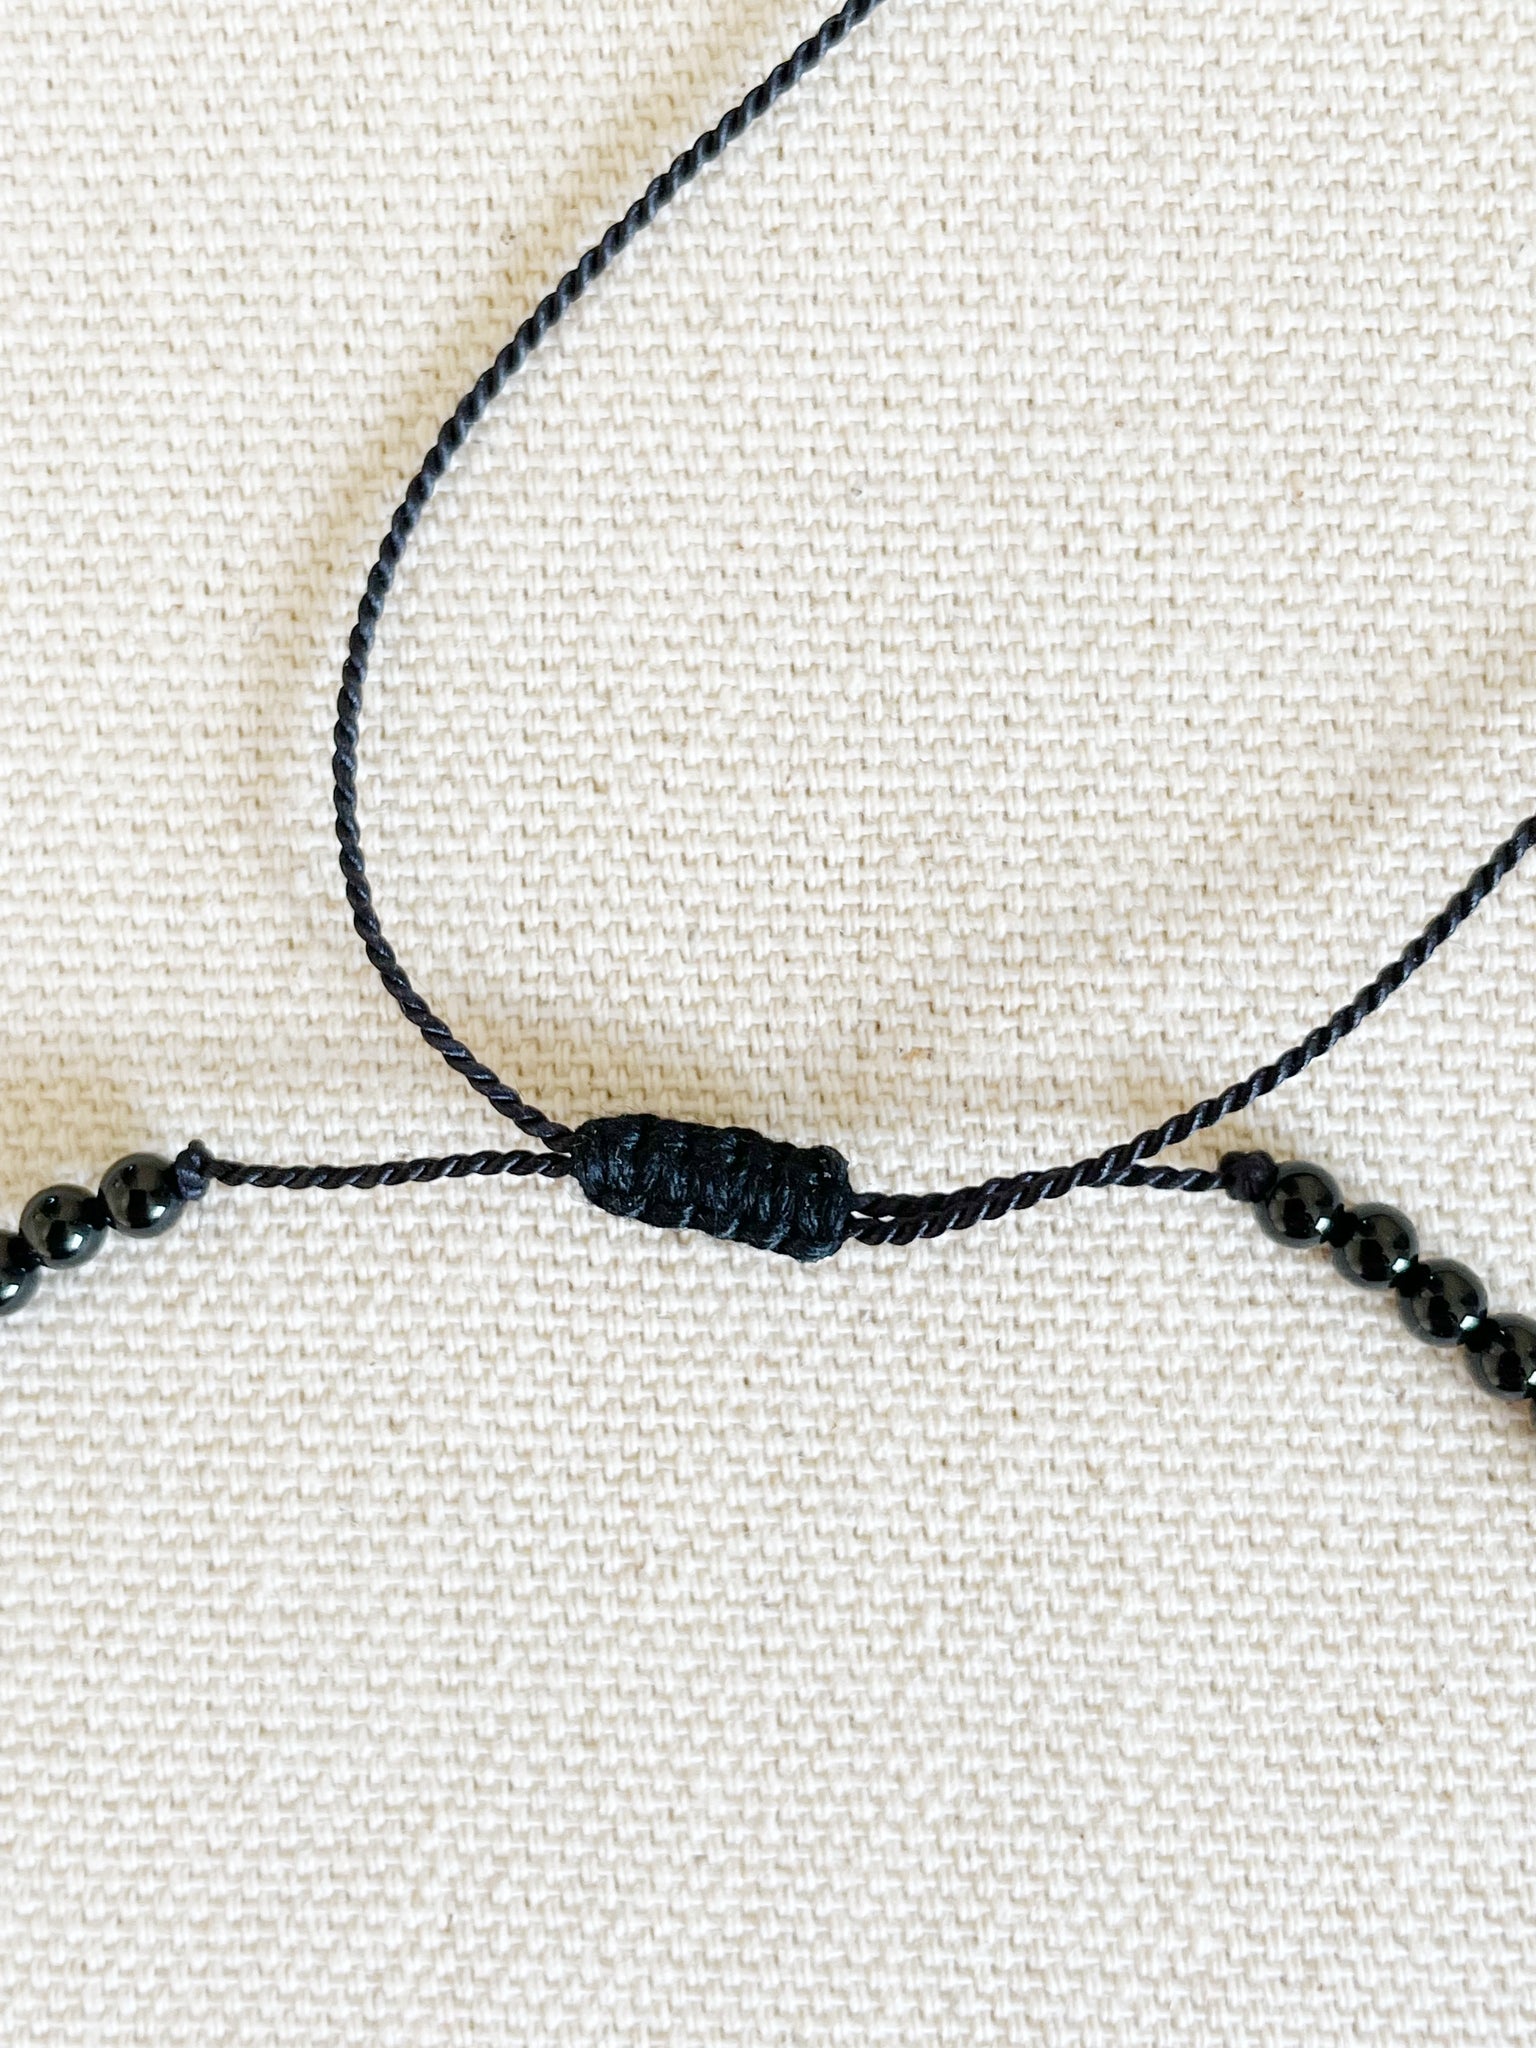 Anochecer Wrap Bracelet/Necklace